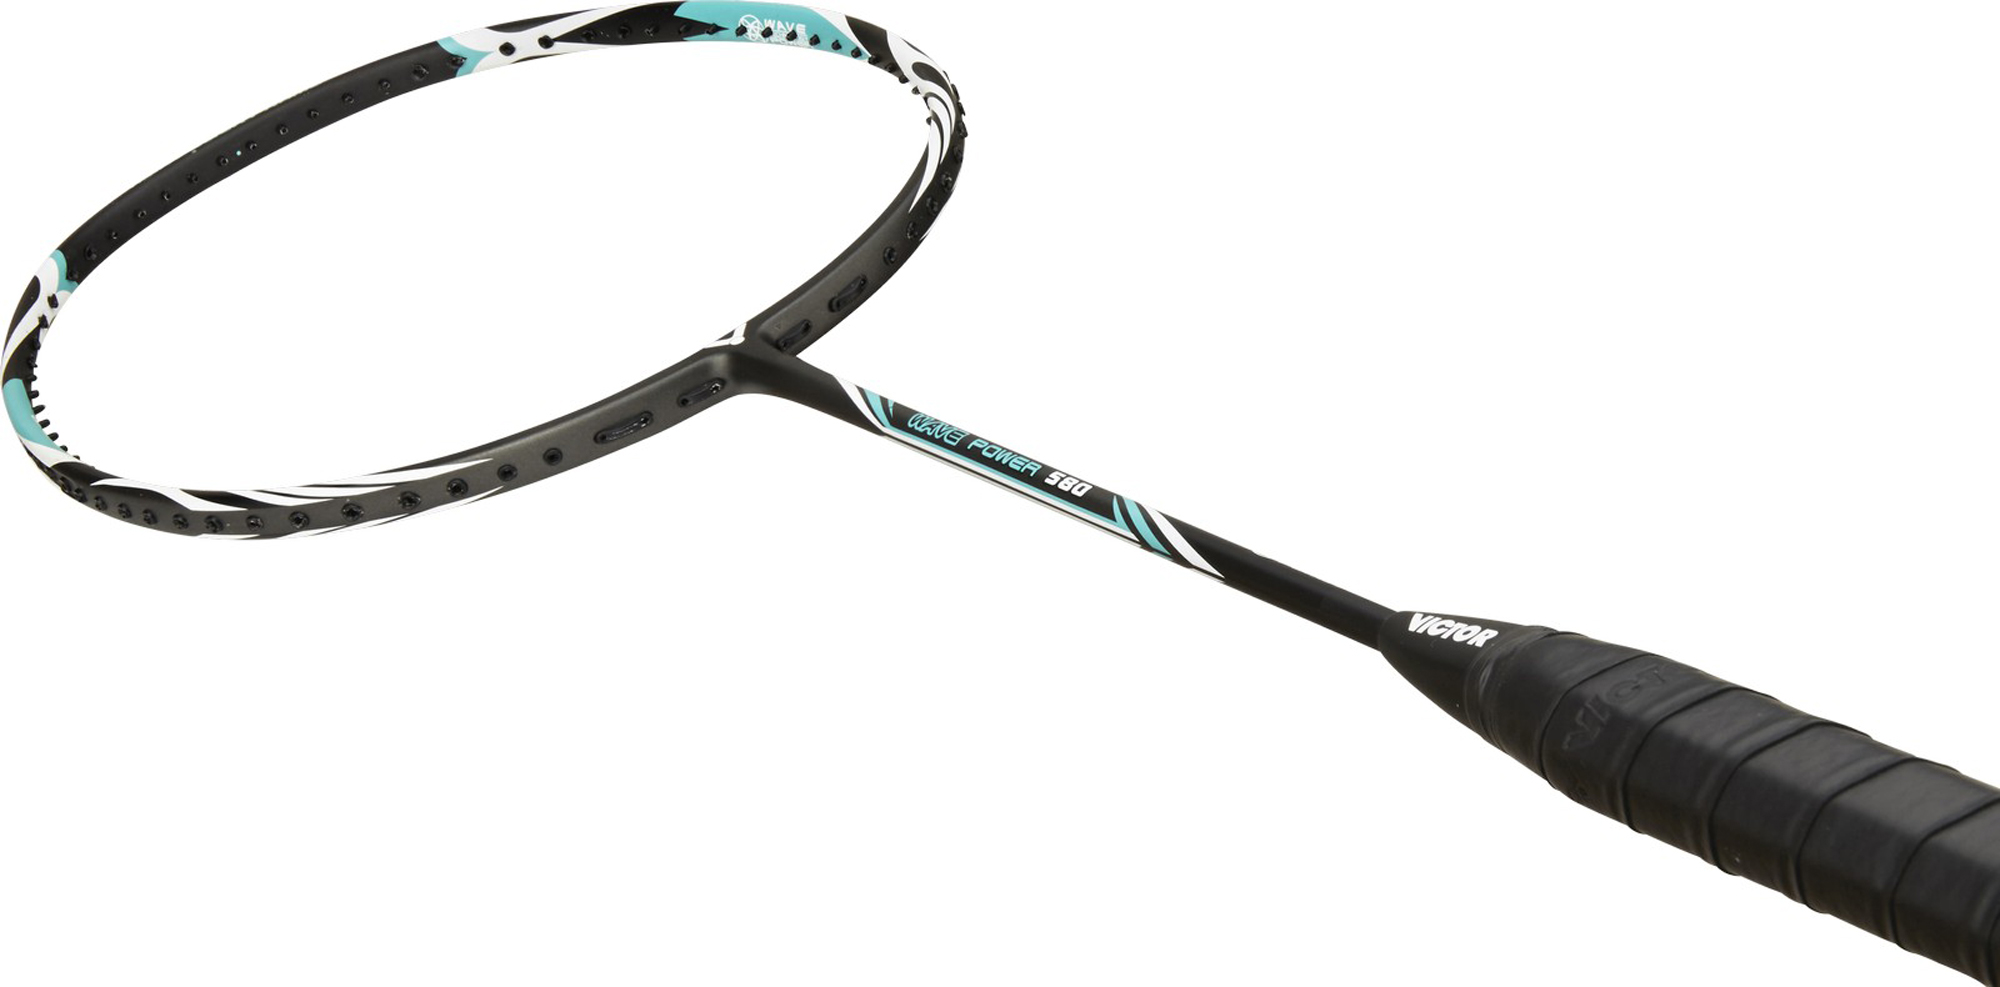 VICTOR Badminton Racket Wave Power 580 Badminton Racquet Brand new 